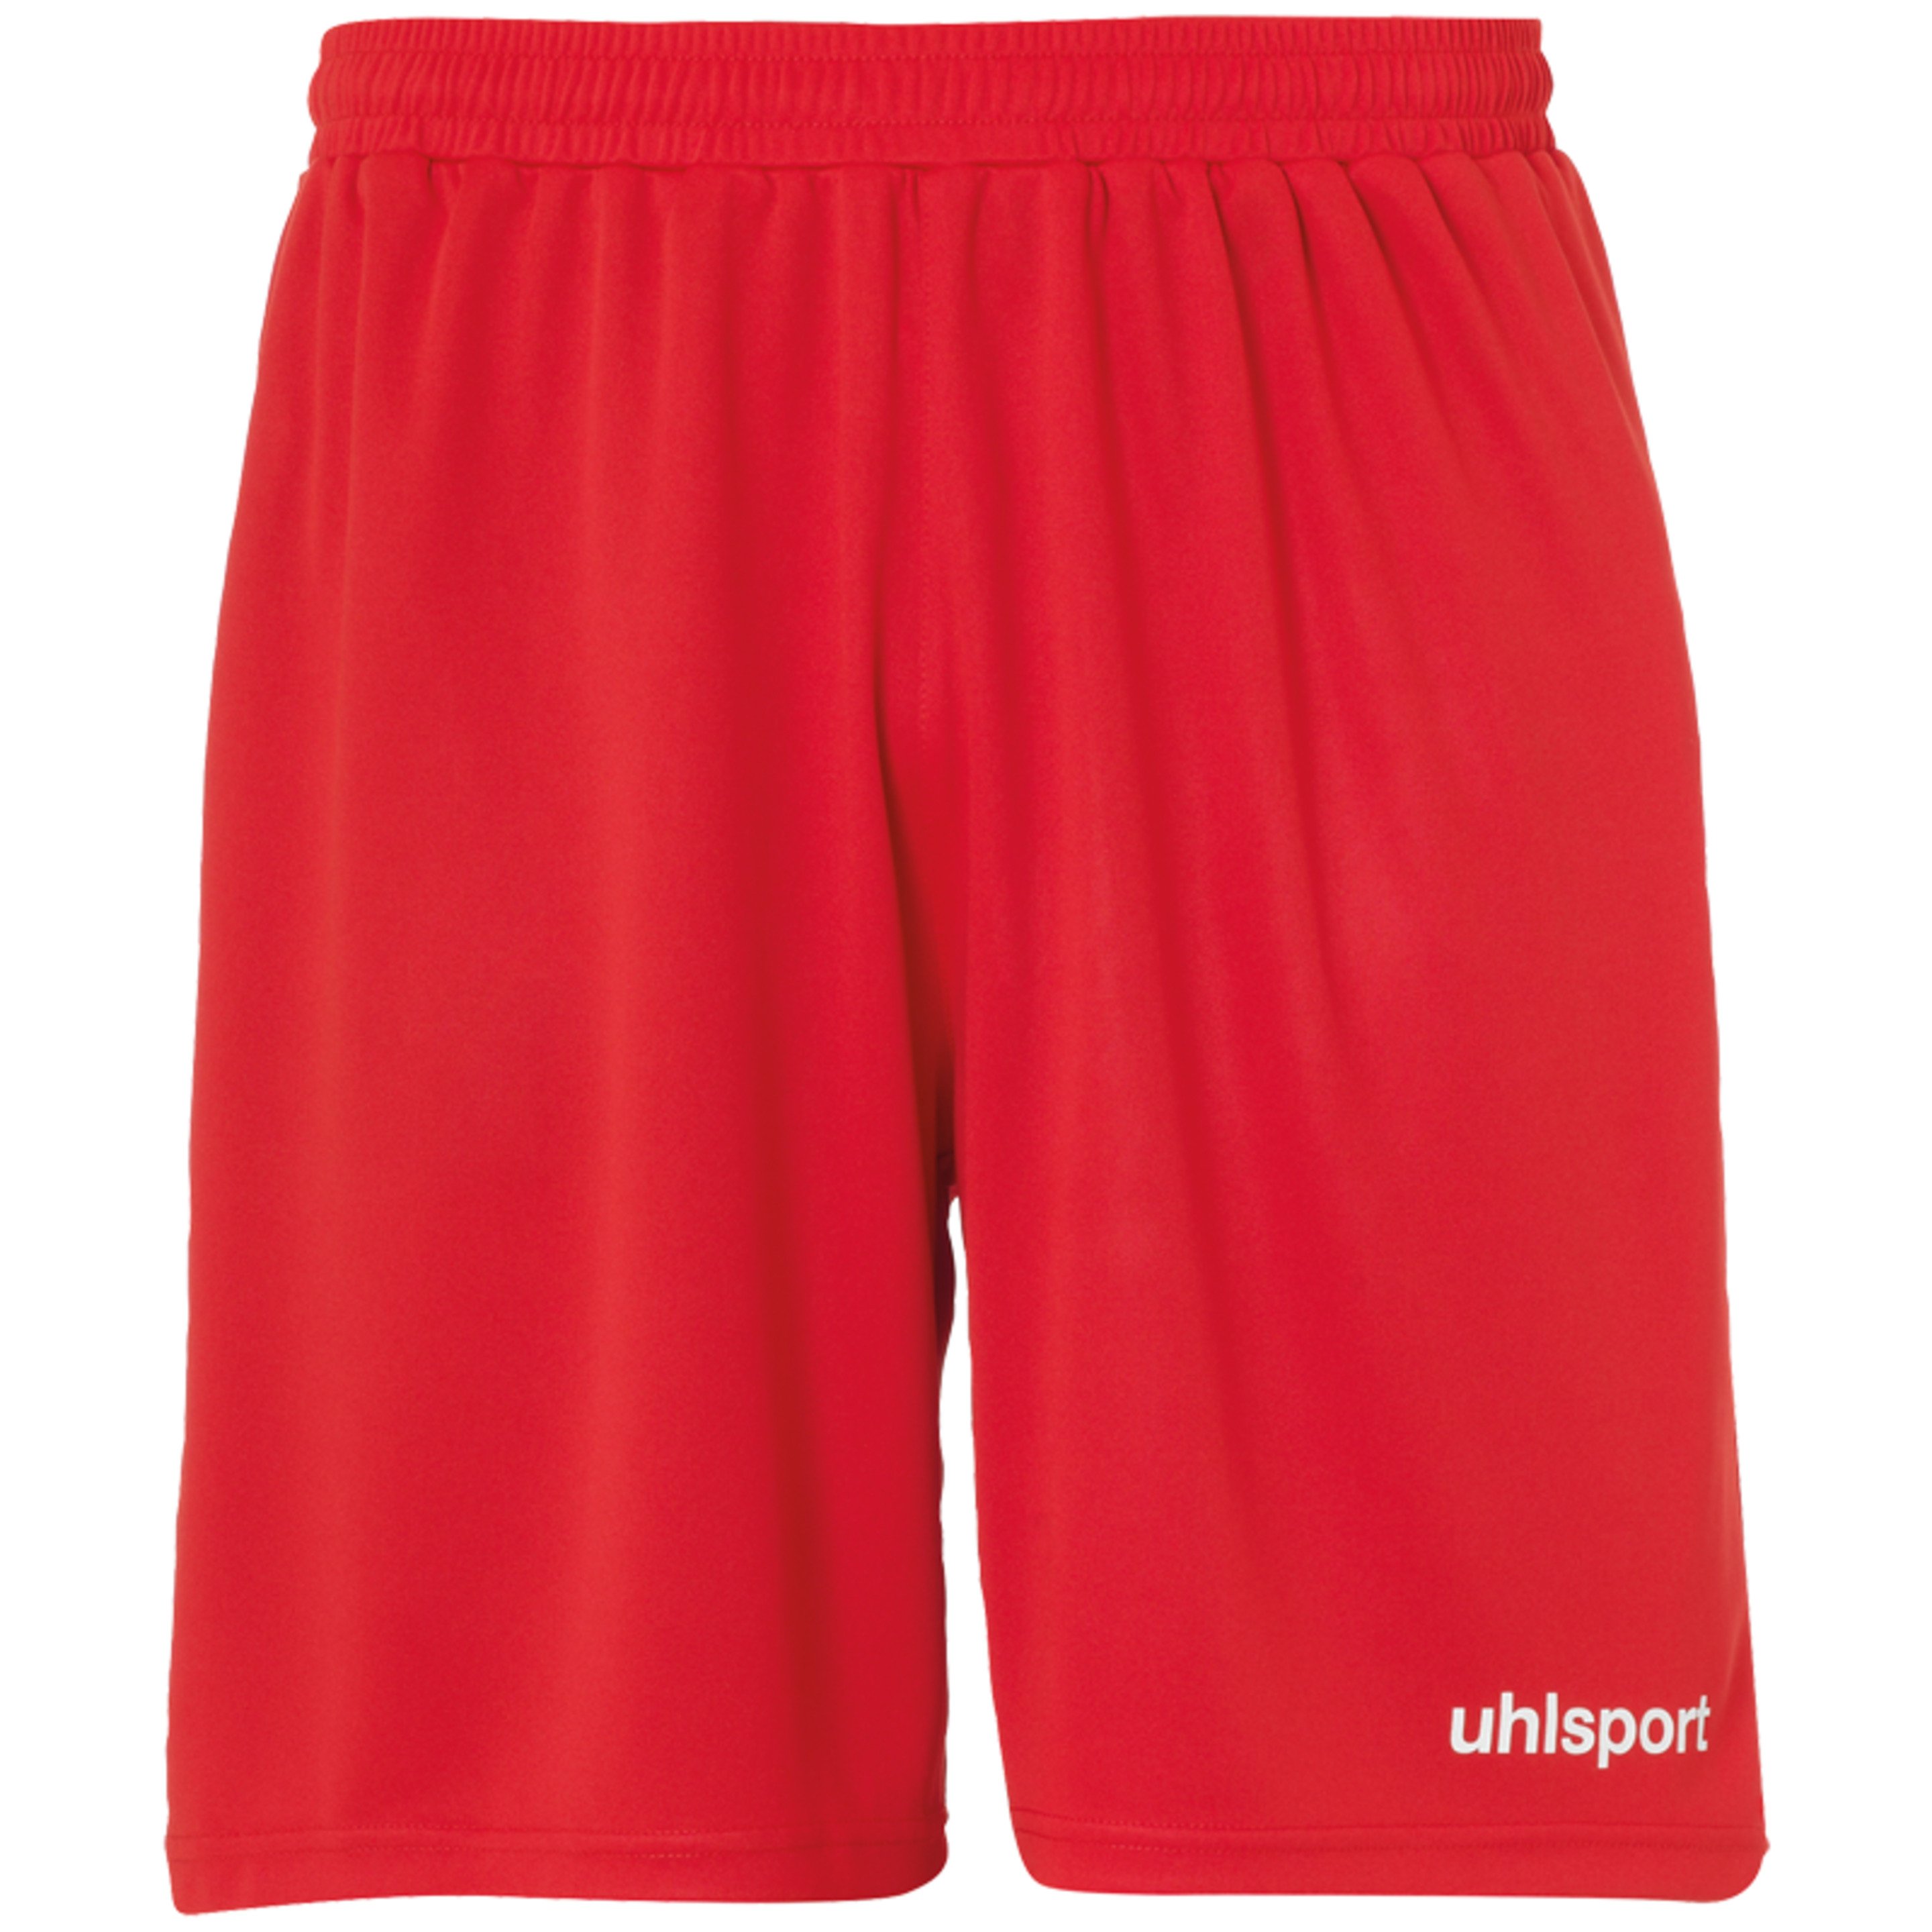 Center Basic Shorts Without Slip Red Uhlsport